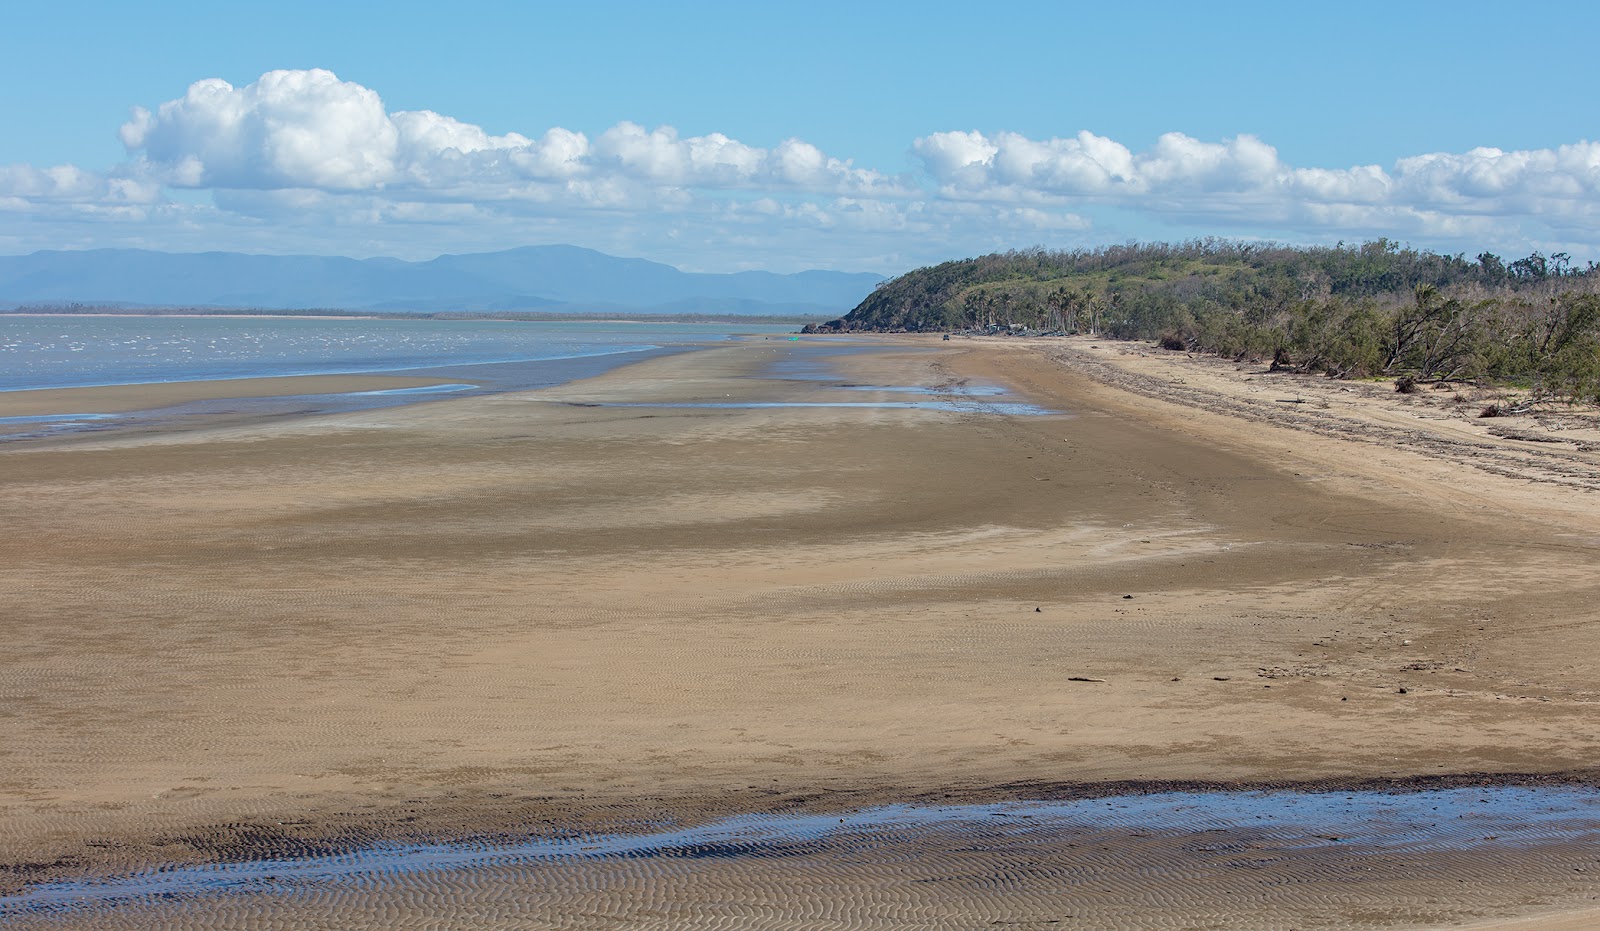 Zdjęcie Conway Beach z powierzchnią jasny piasek